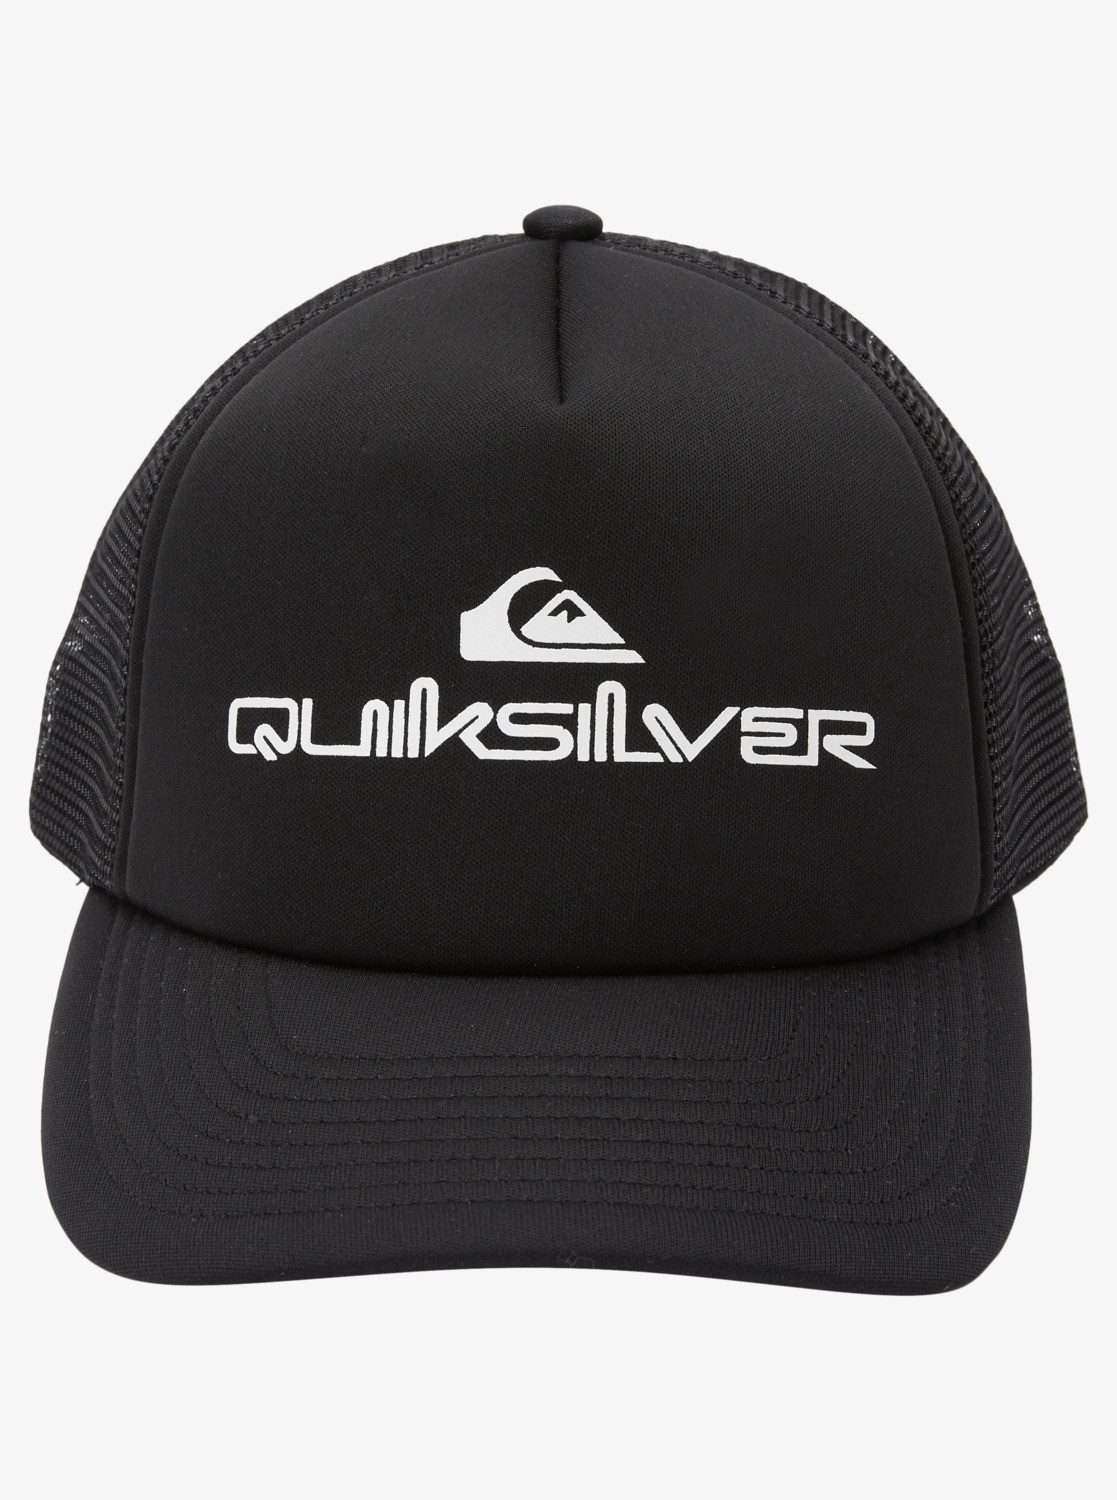 Omnistack Trucker Quiksilver Cap Black